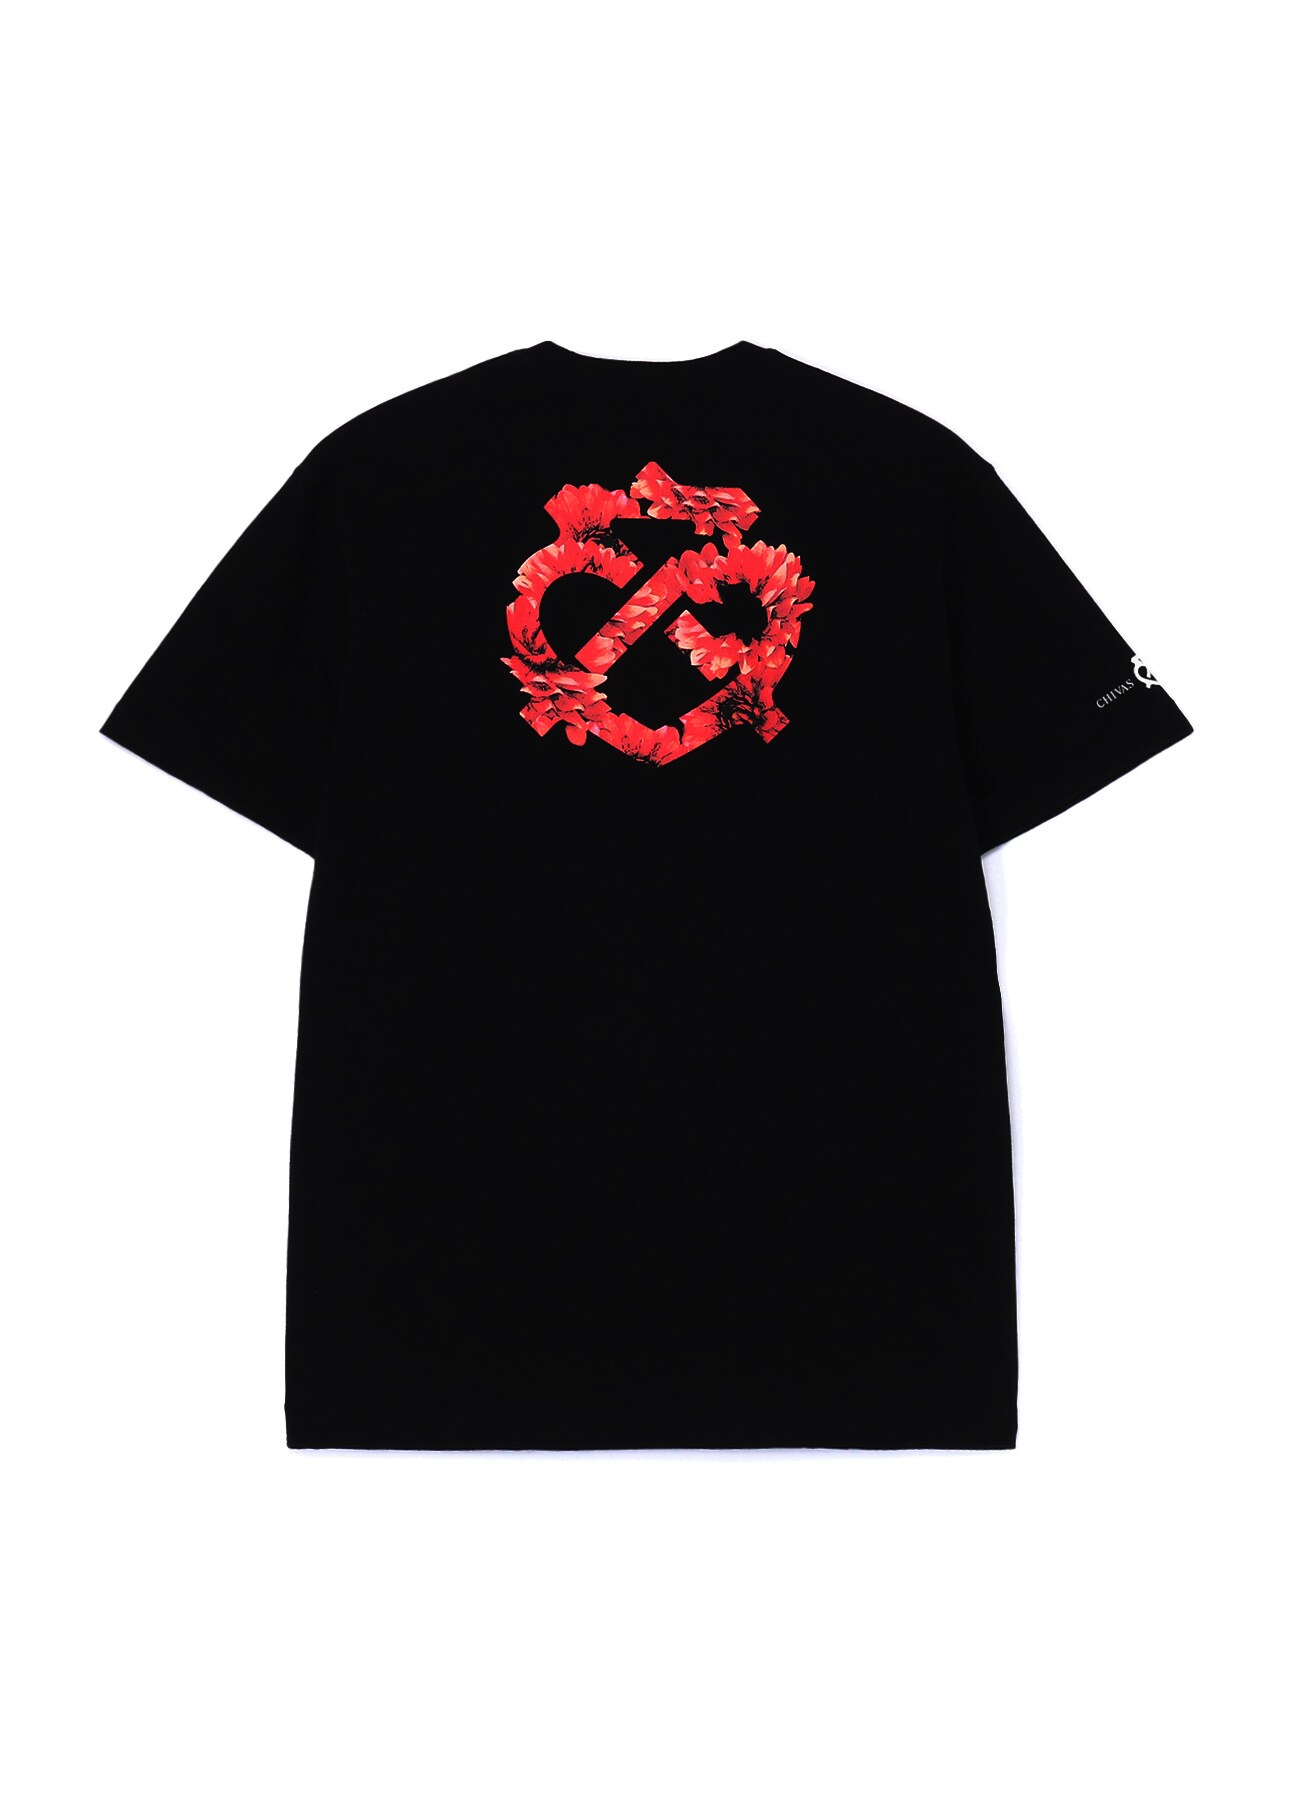 WILDSIDE × CHIVAS REGAL RED FLOWER T-Shirt